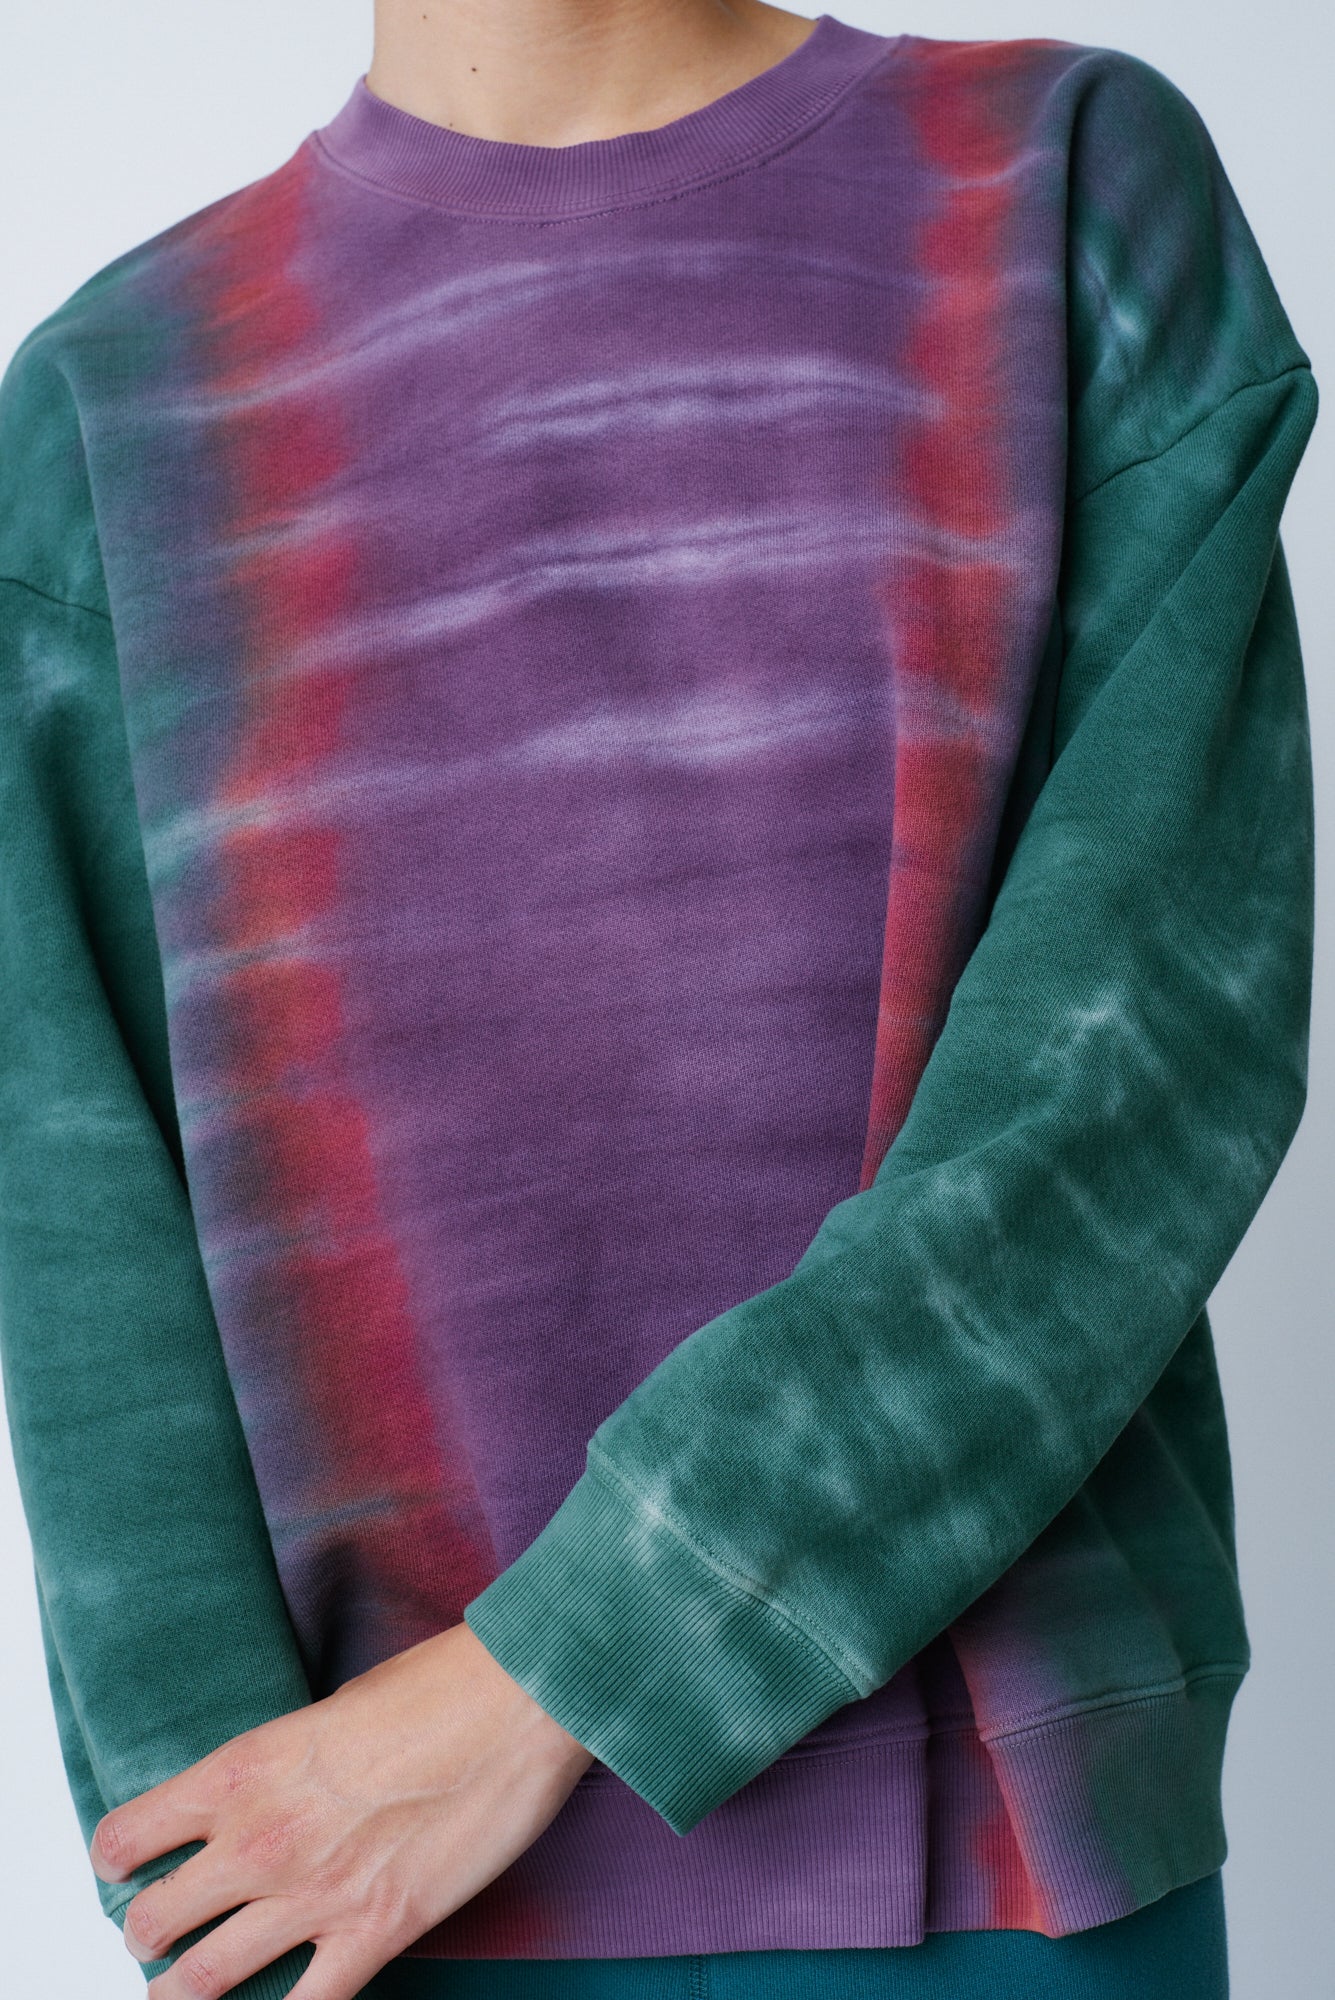 Fantasy Tiger Tie Dye Vintage Fleece Drop Shoulder Sweatshirt Front Close-Up View